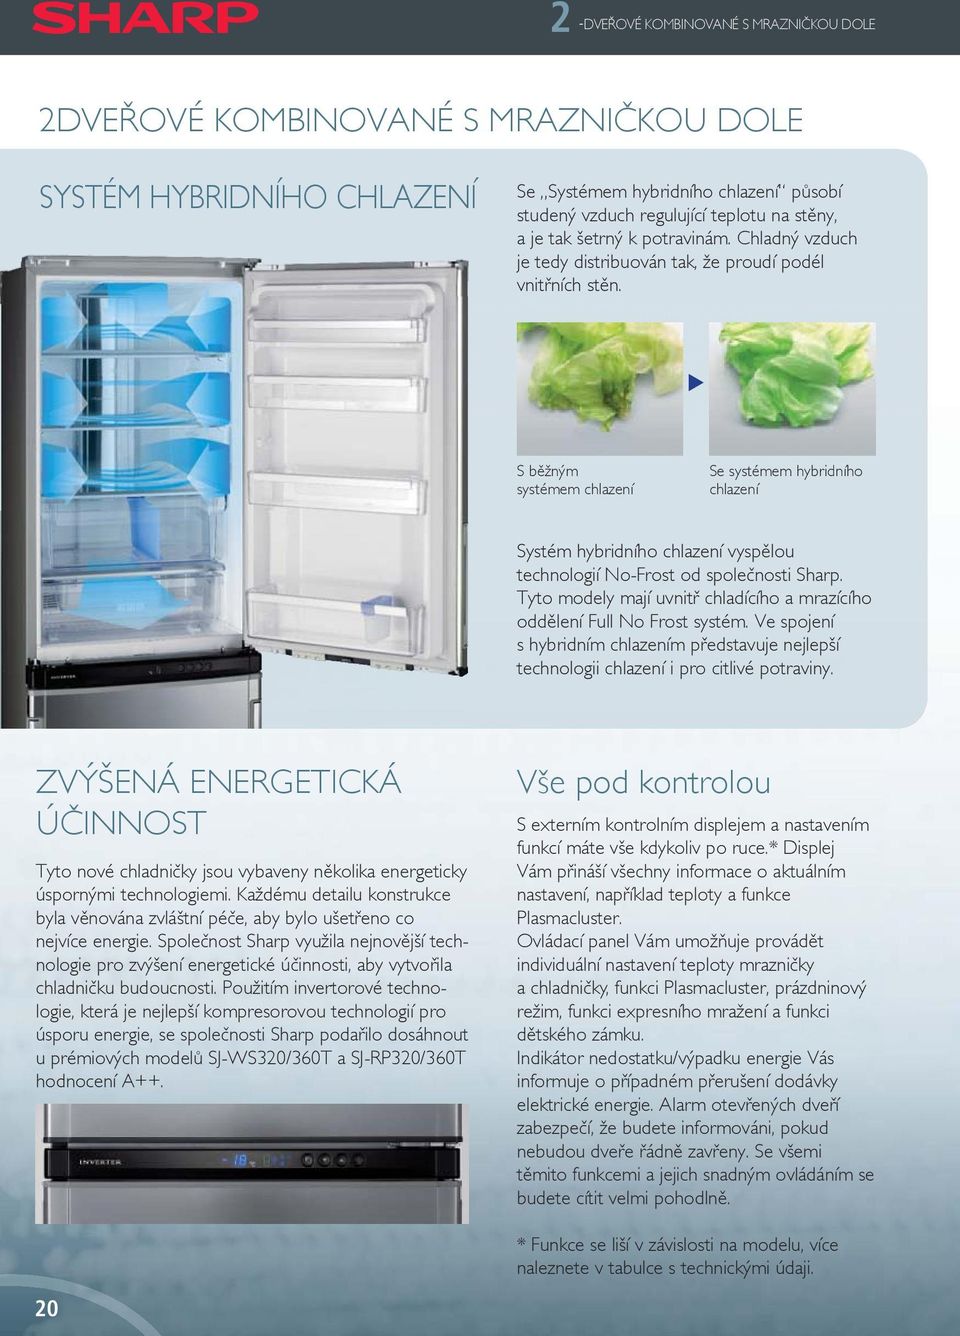 S běžným systémem chlazení Se systémem hybridního chlazení Systém hybridního chlazení vyspělou technologií No-Frost od společnosti Sharp.